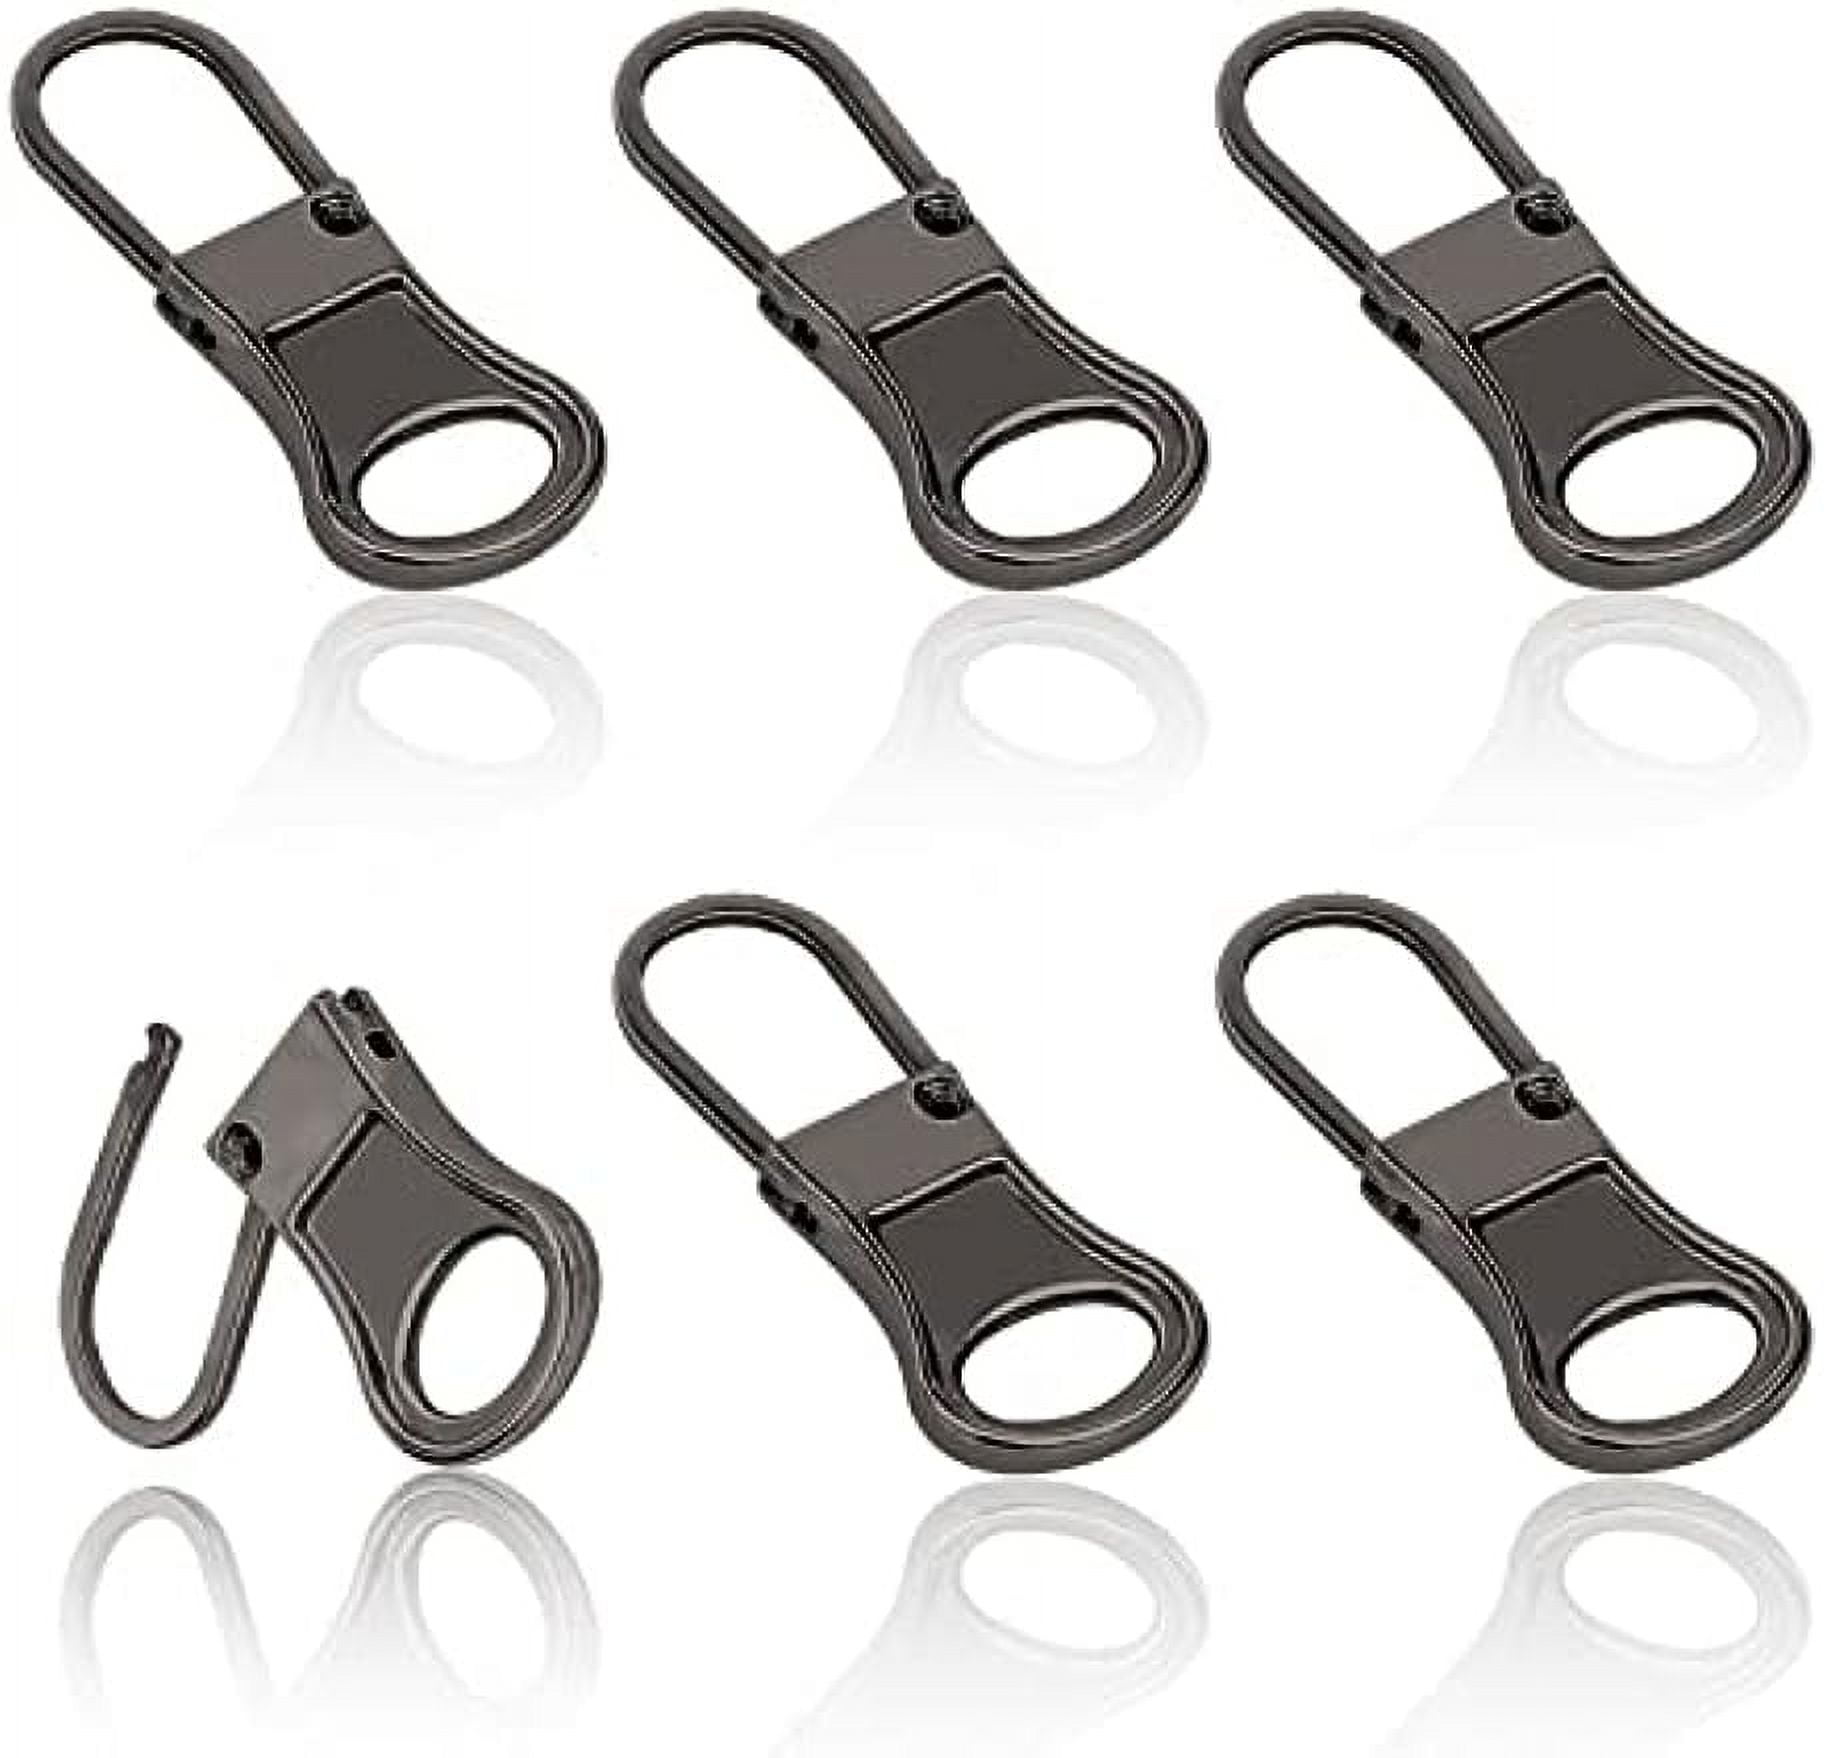 SEWOART 20pcs Zipper Tail Zipper Extender Boot Zipper Inserts Zipper Repair  Kit for Jackets Dress Jacket Zipper Puller Helper Extension Fixer for